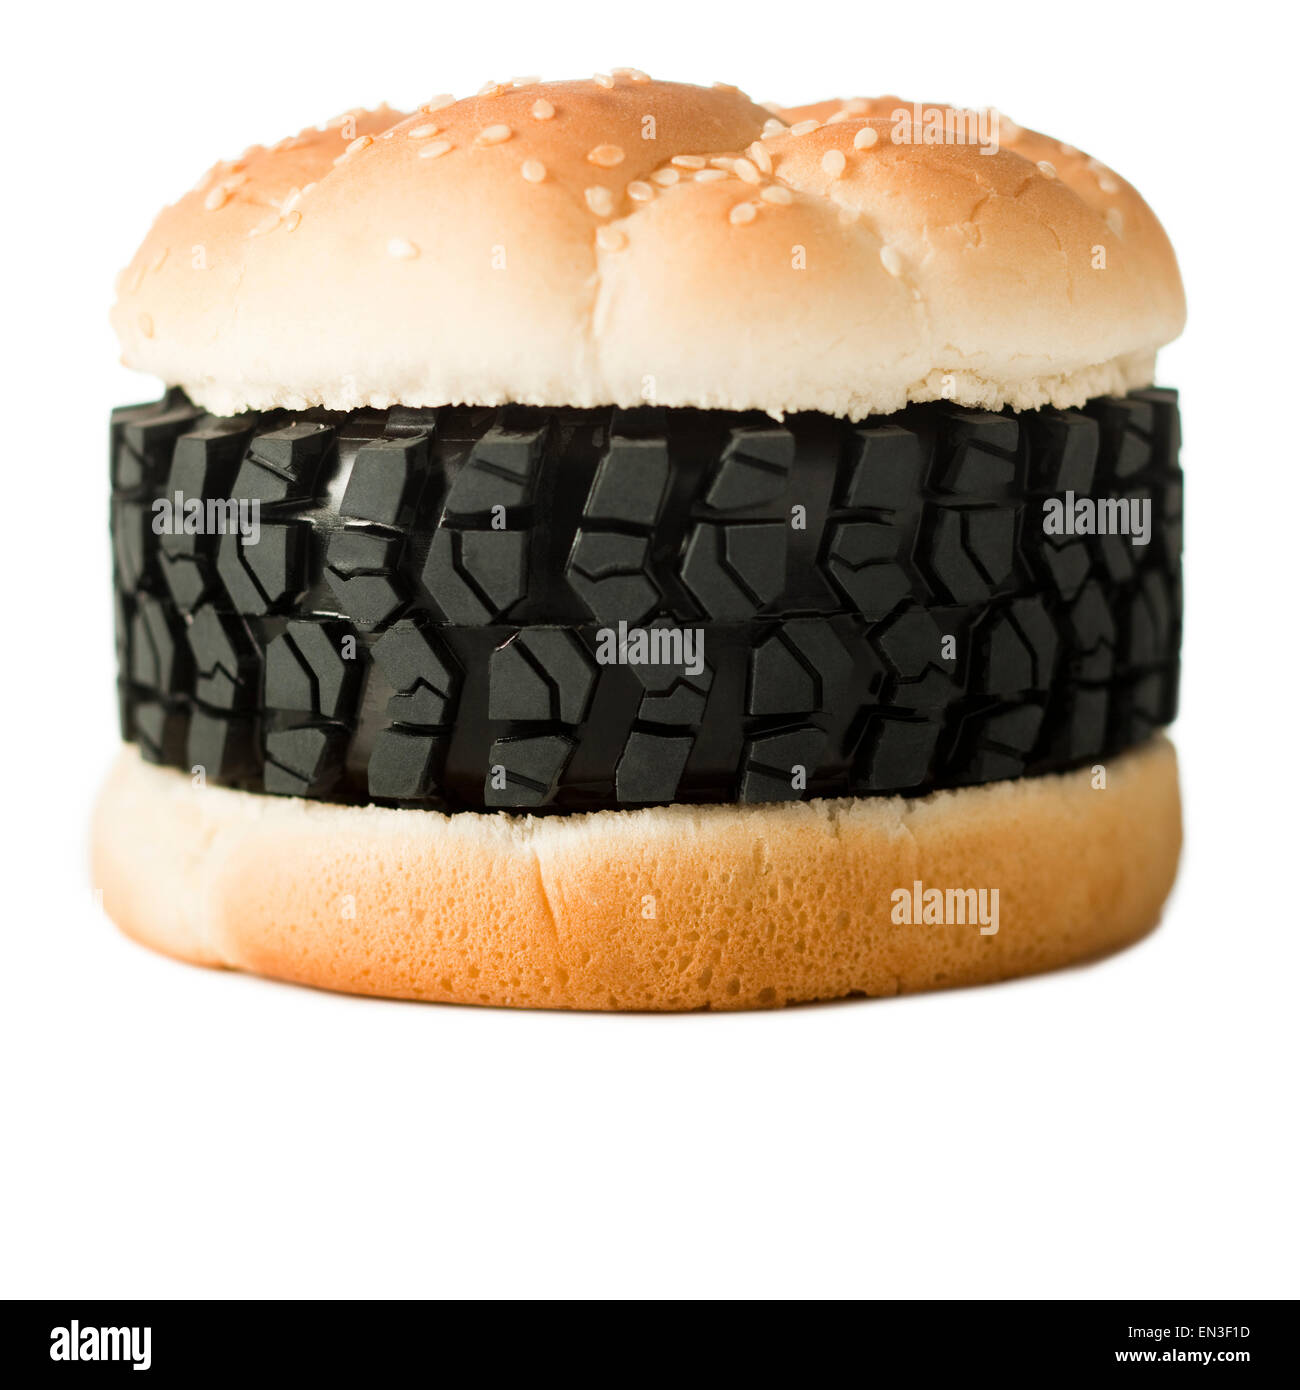 Neumático en burger como comida basura,Foto de estudio Foto de stock